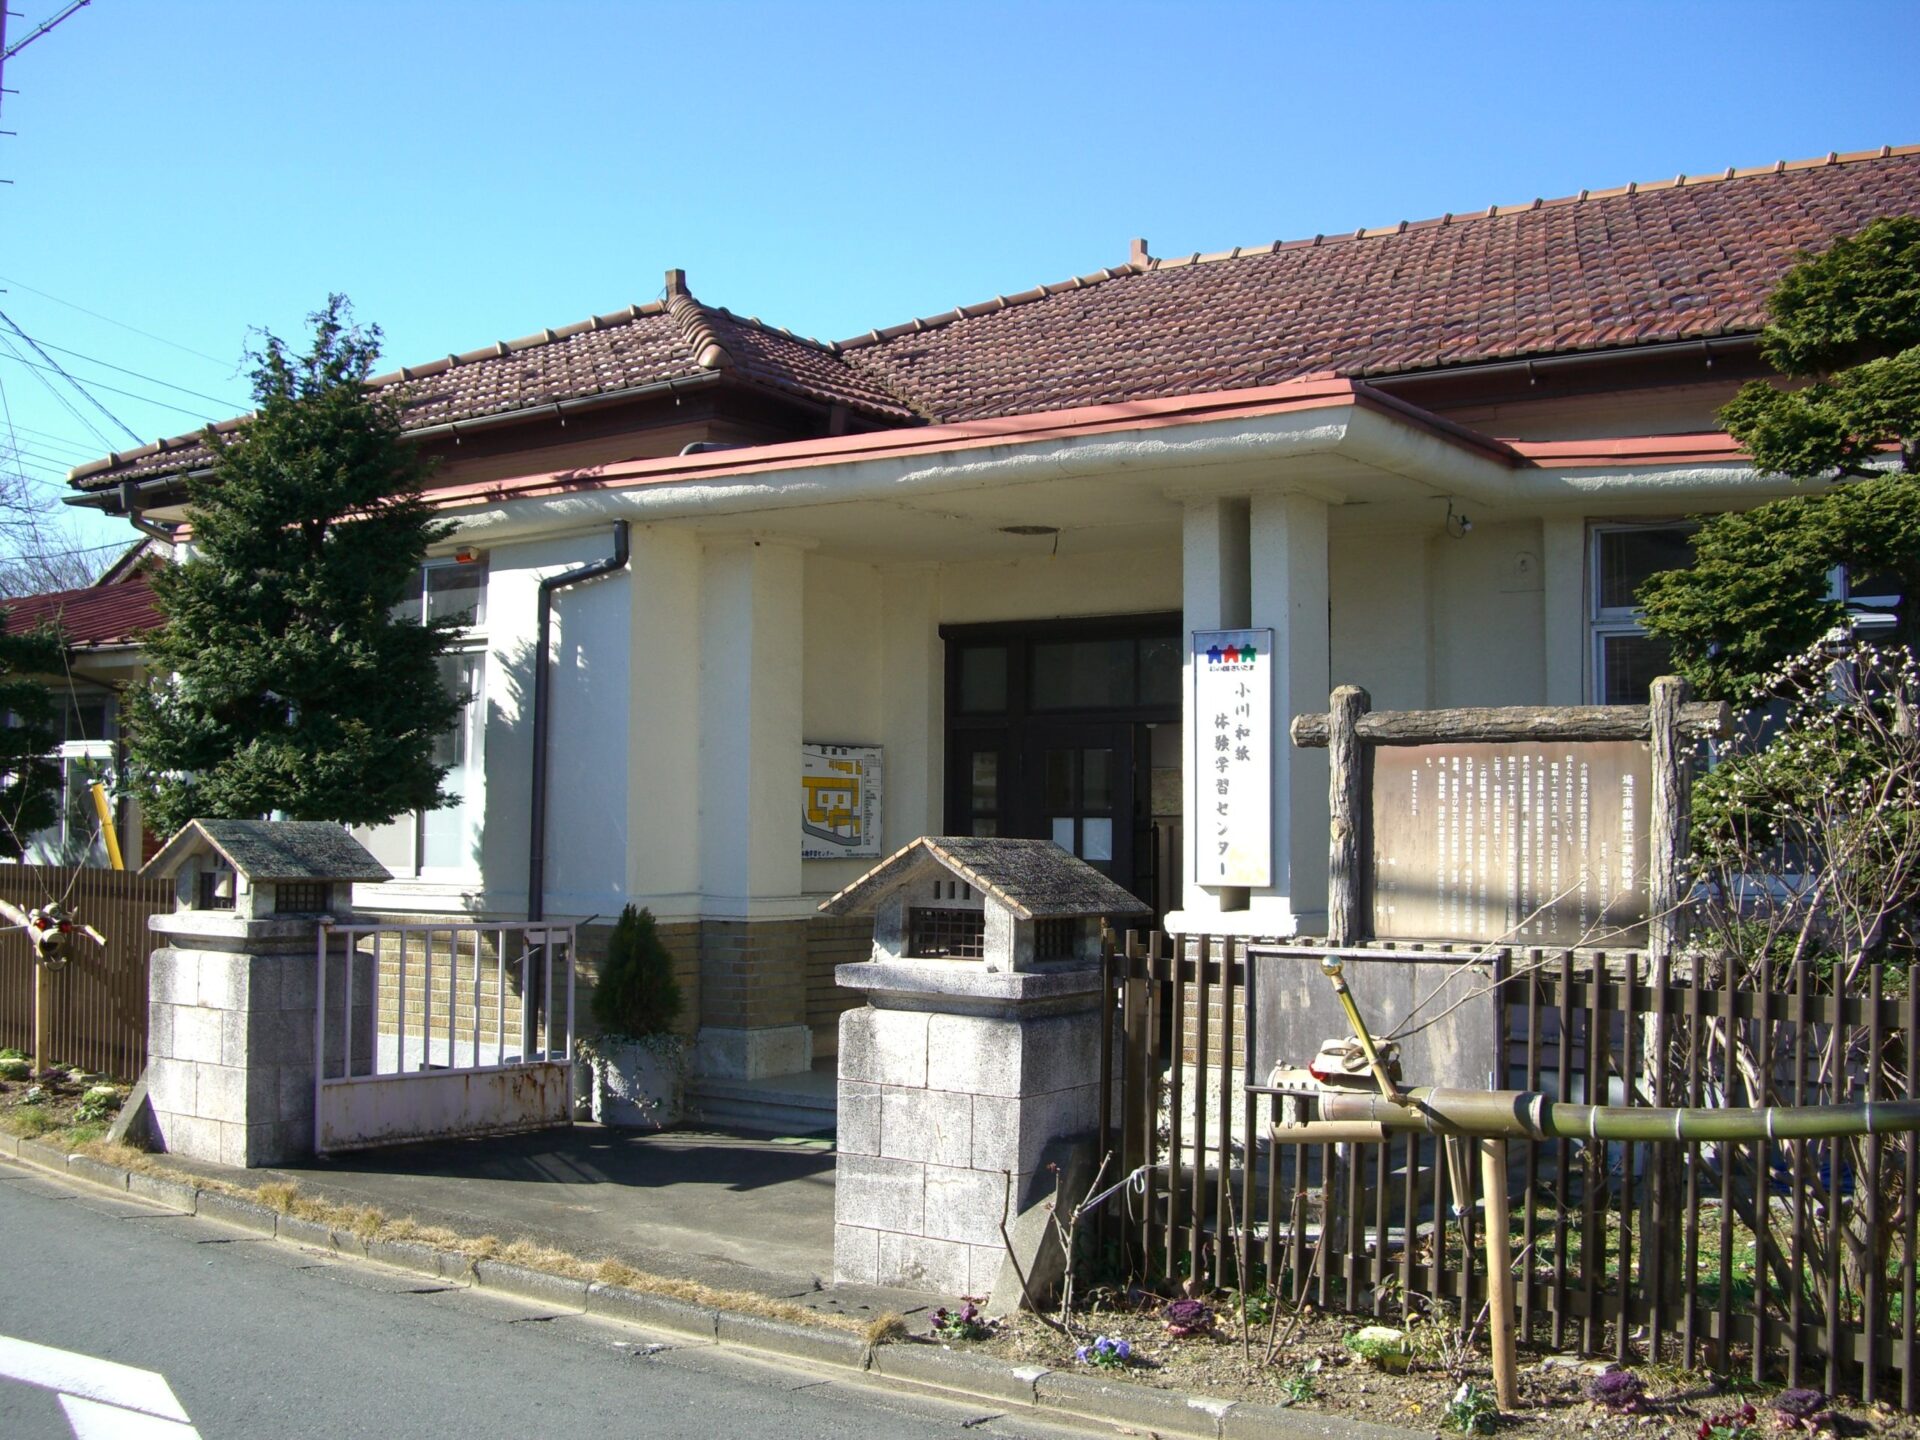 歴史ある建造物を見学しながら和紙の歴史を肌で感じる「小川町和紙体験学習センター」